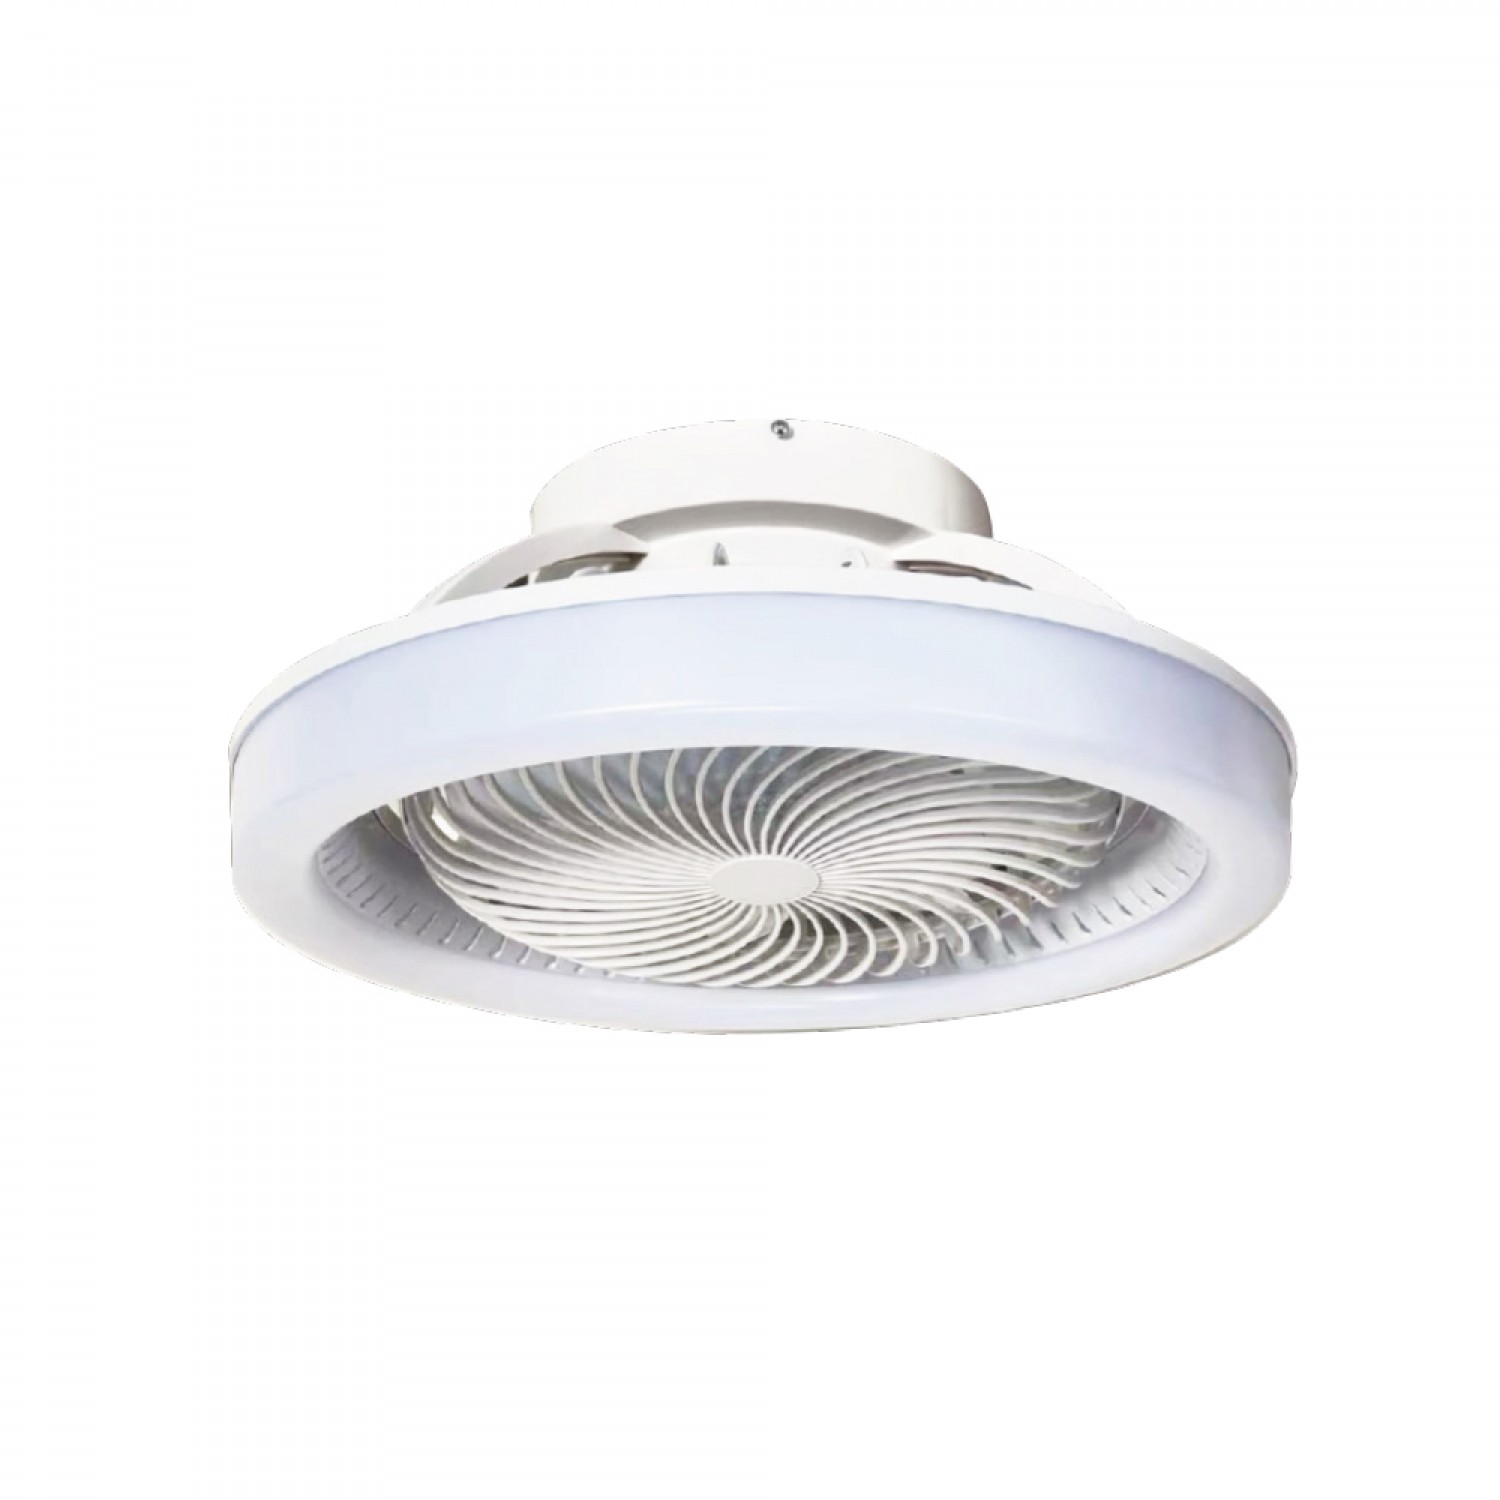 Eidin 36W 3CCT LED Fan Light in White Color (101000810)